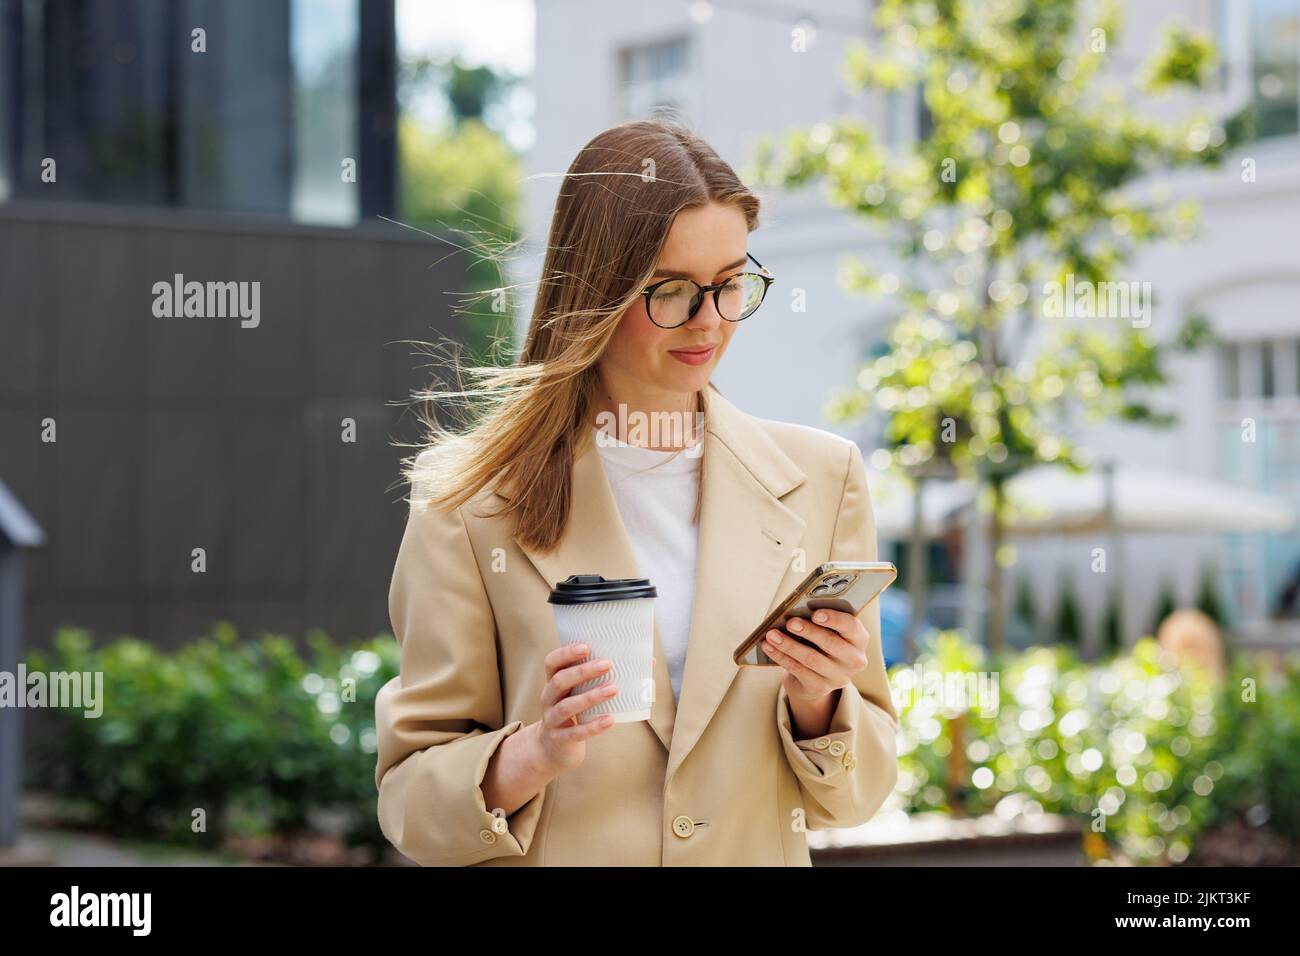 Ein junges blondes Mädchen vor dem Hintergrund eines Geschäftszentrums, Bürozentrums. Porträt eines erfolgreichen Start-ups. Freizeitanzug mit Smartphone und Kaffee. Stockfoto